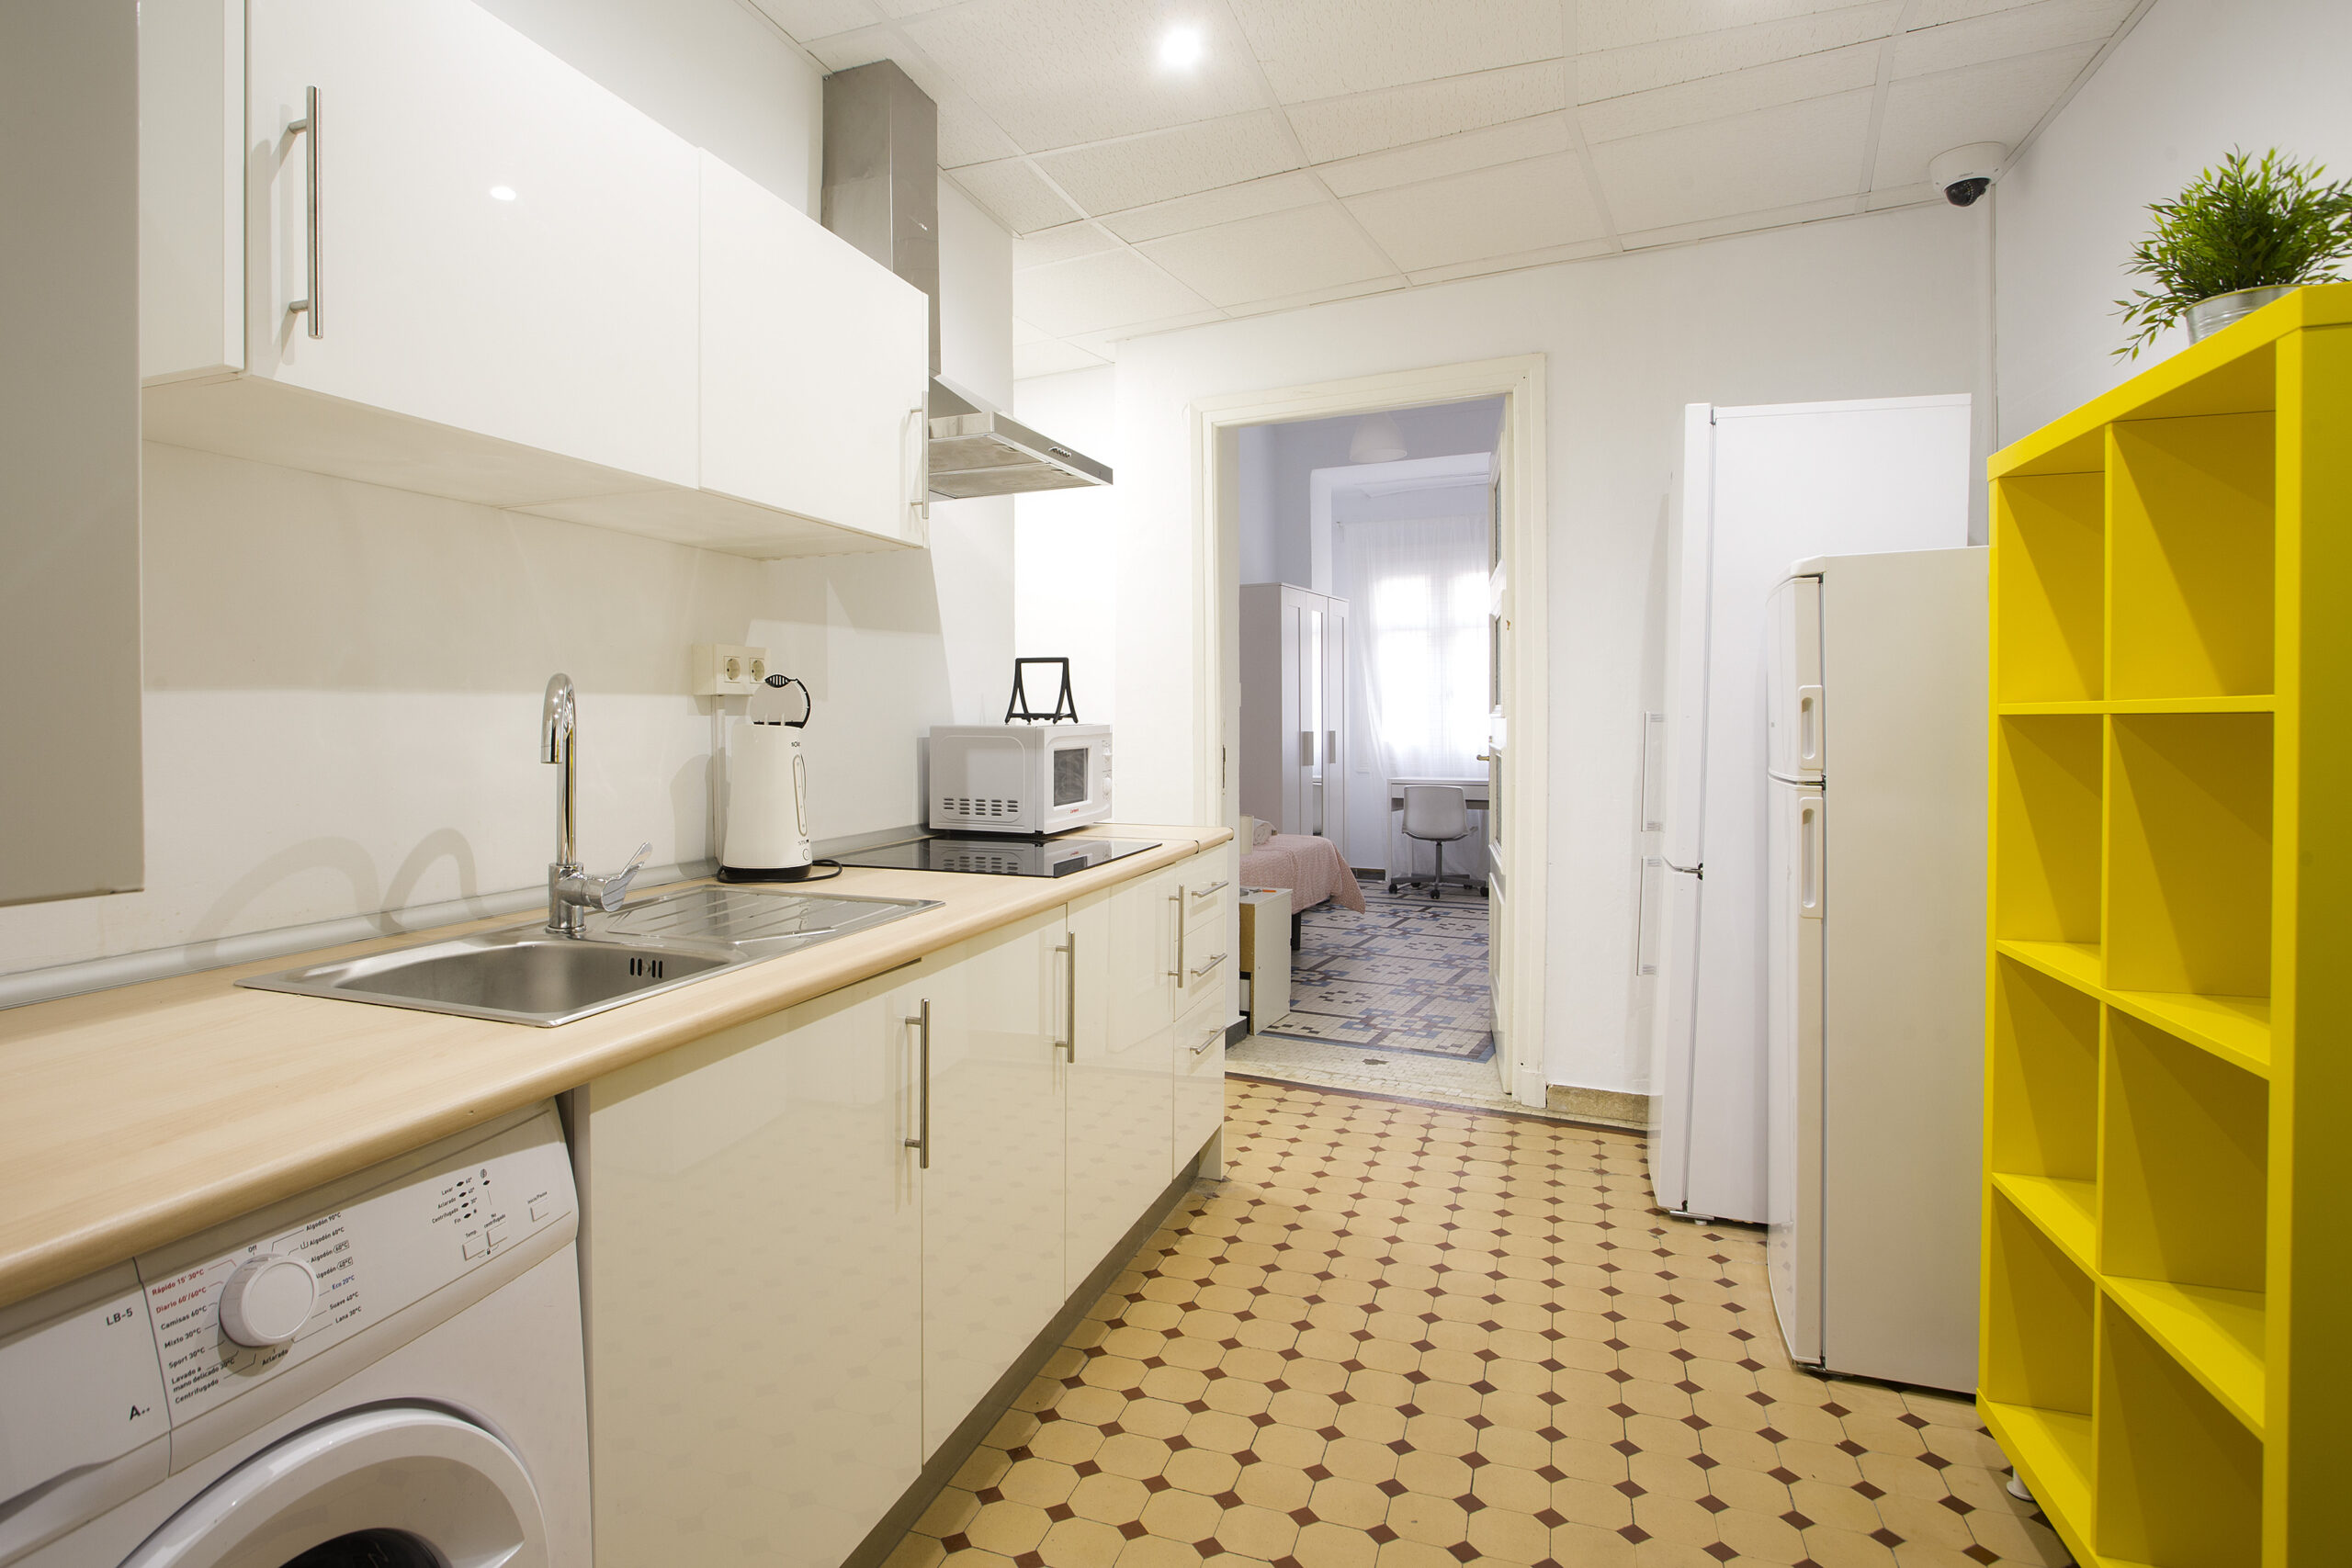 Expanish Malaga Accommodation – Shared Apartment